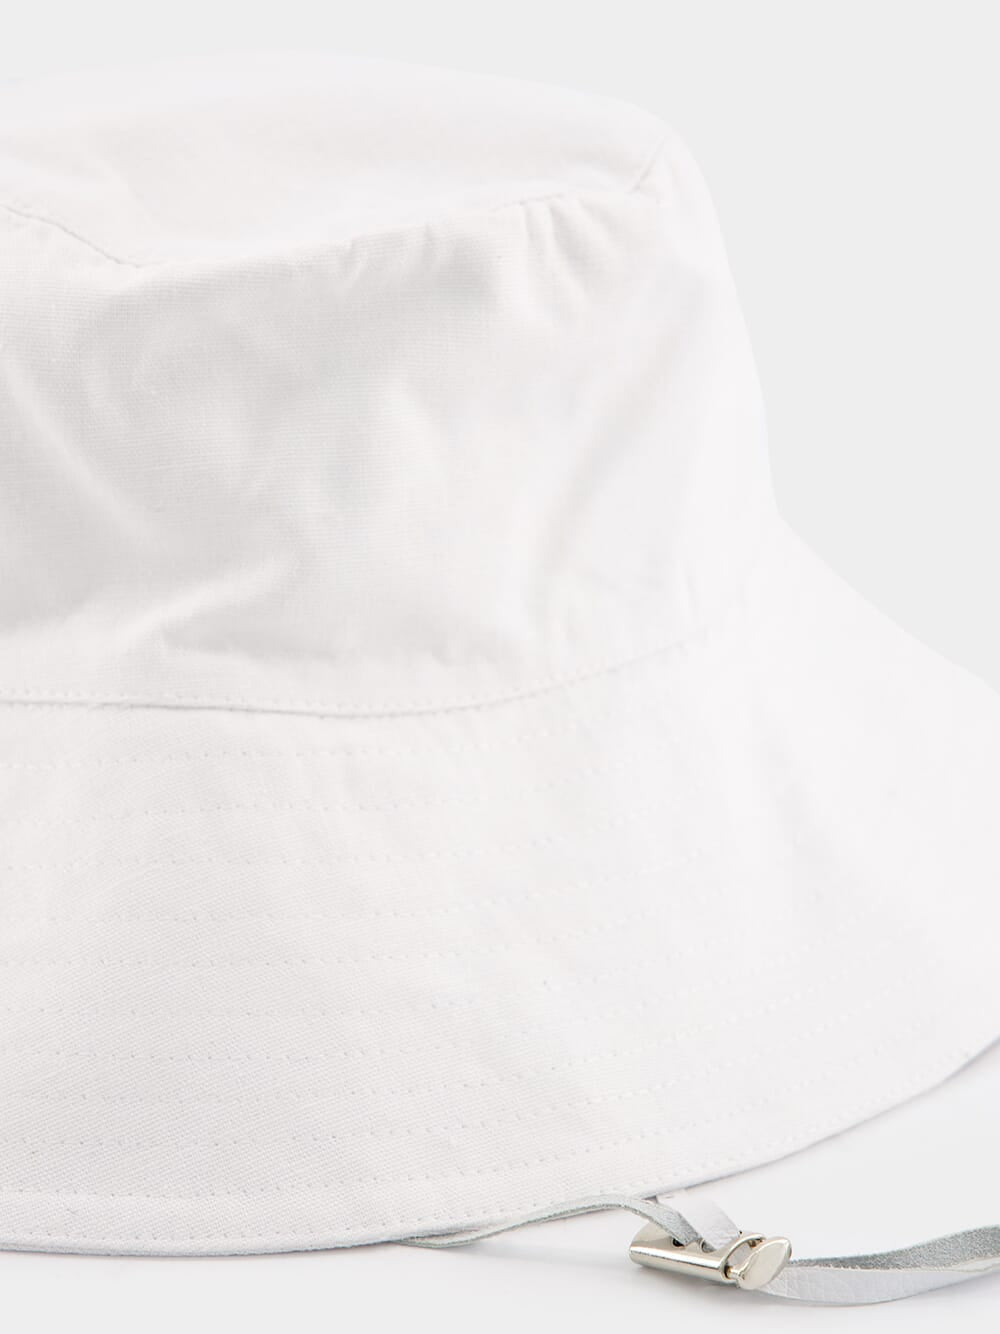 Safari White Linen Hat